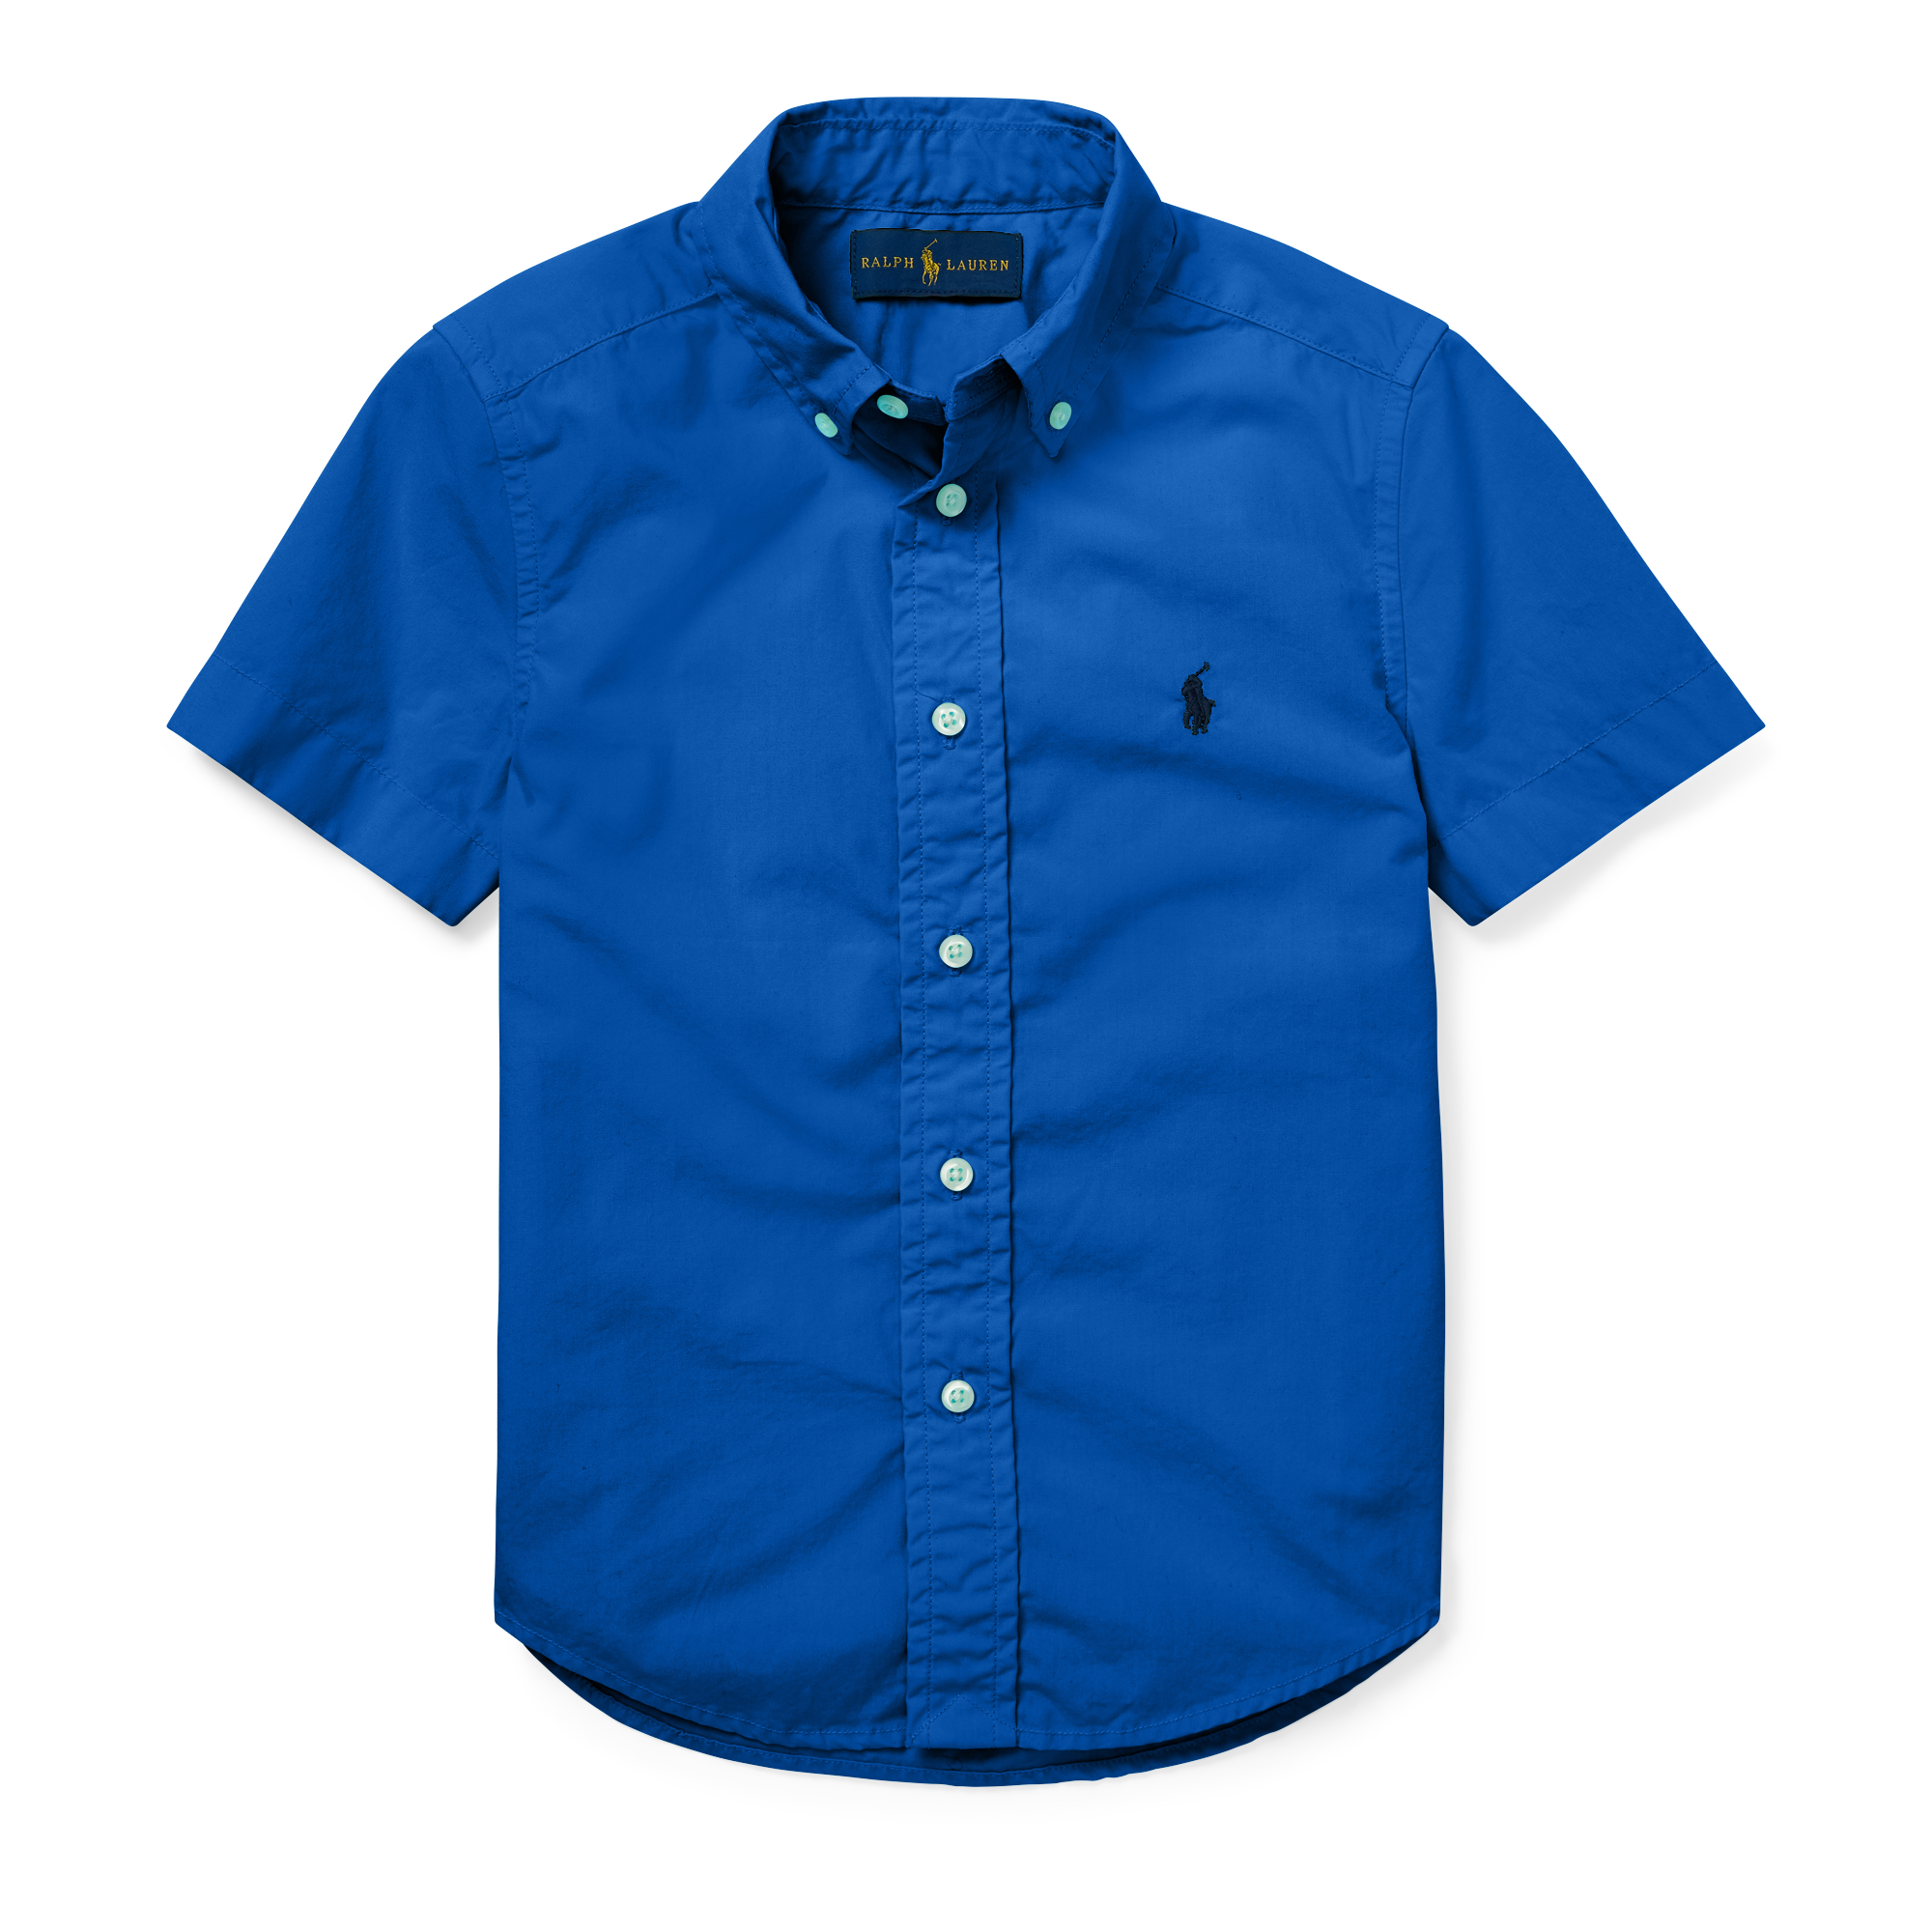 Купить летнюю рубашку с рукавом. Синяя рубашка. Синяя рубашка мужская. Синяя рубашка с коротким рукавом. Синяя мужская рубашка с коротким рукавом.